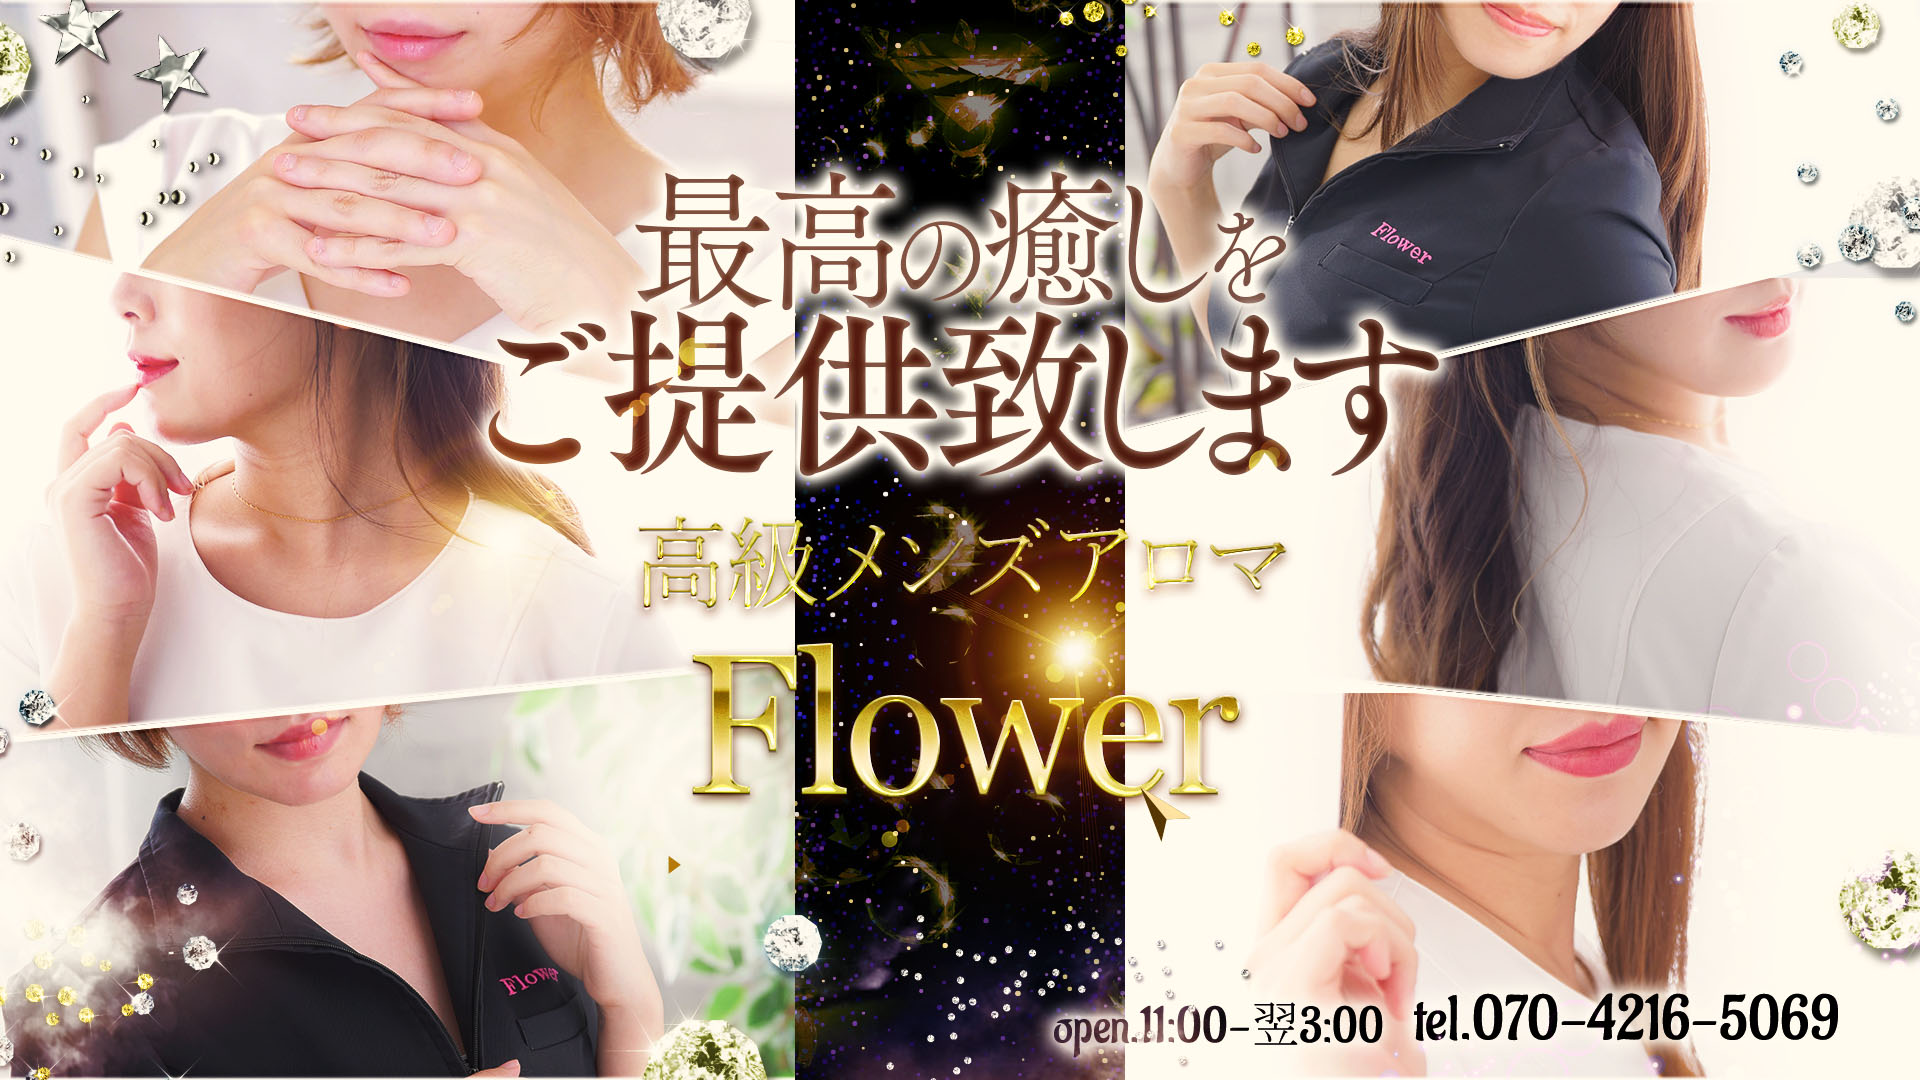 熊本高級メンズアロマ Flowerの求人画像3